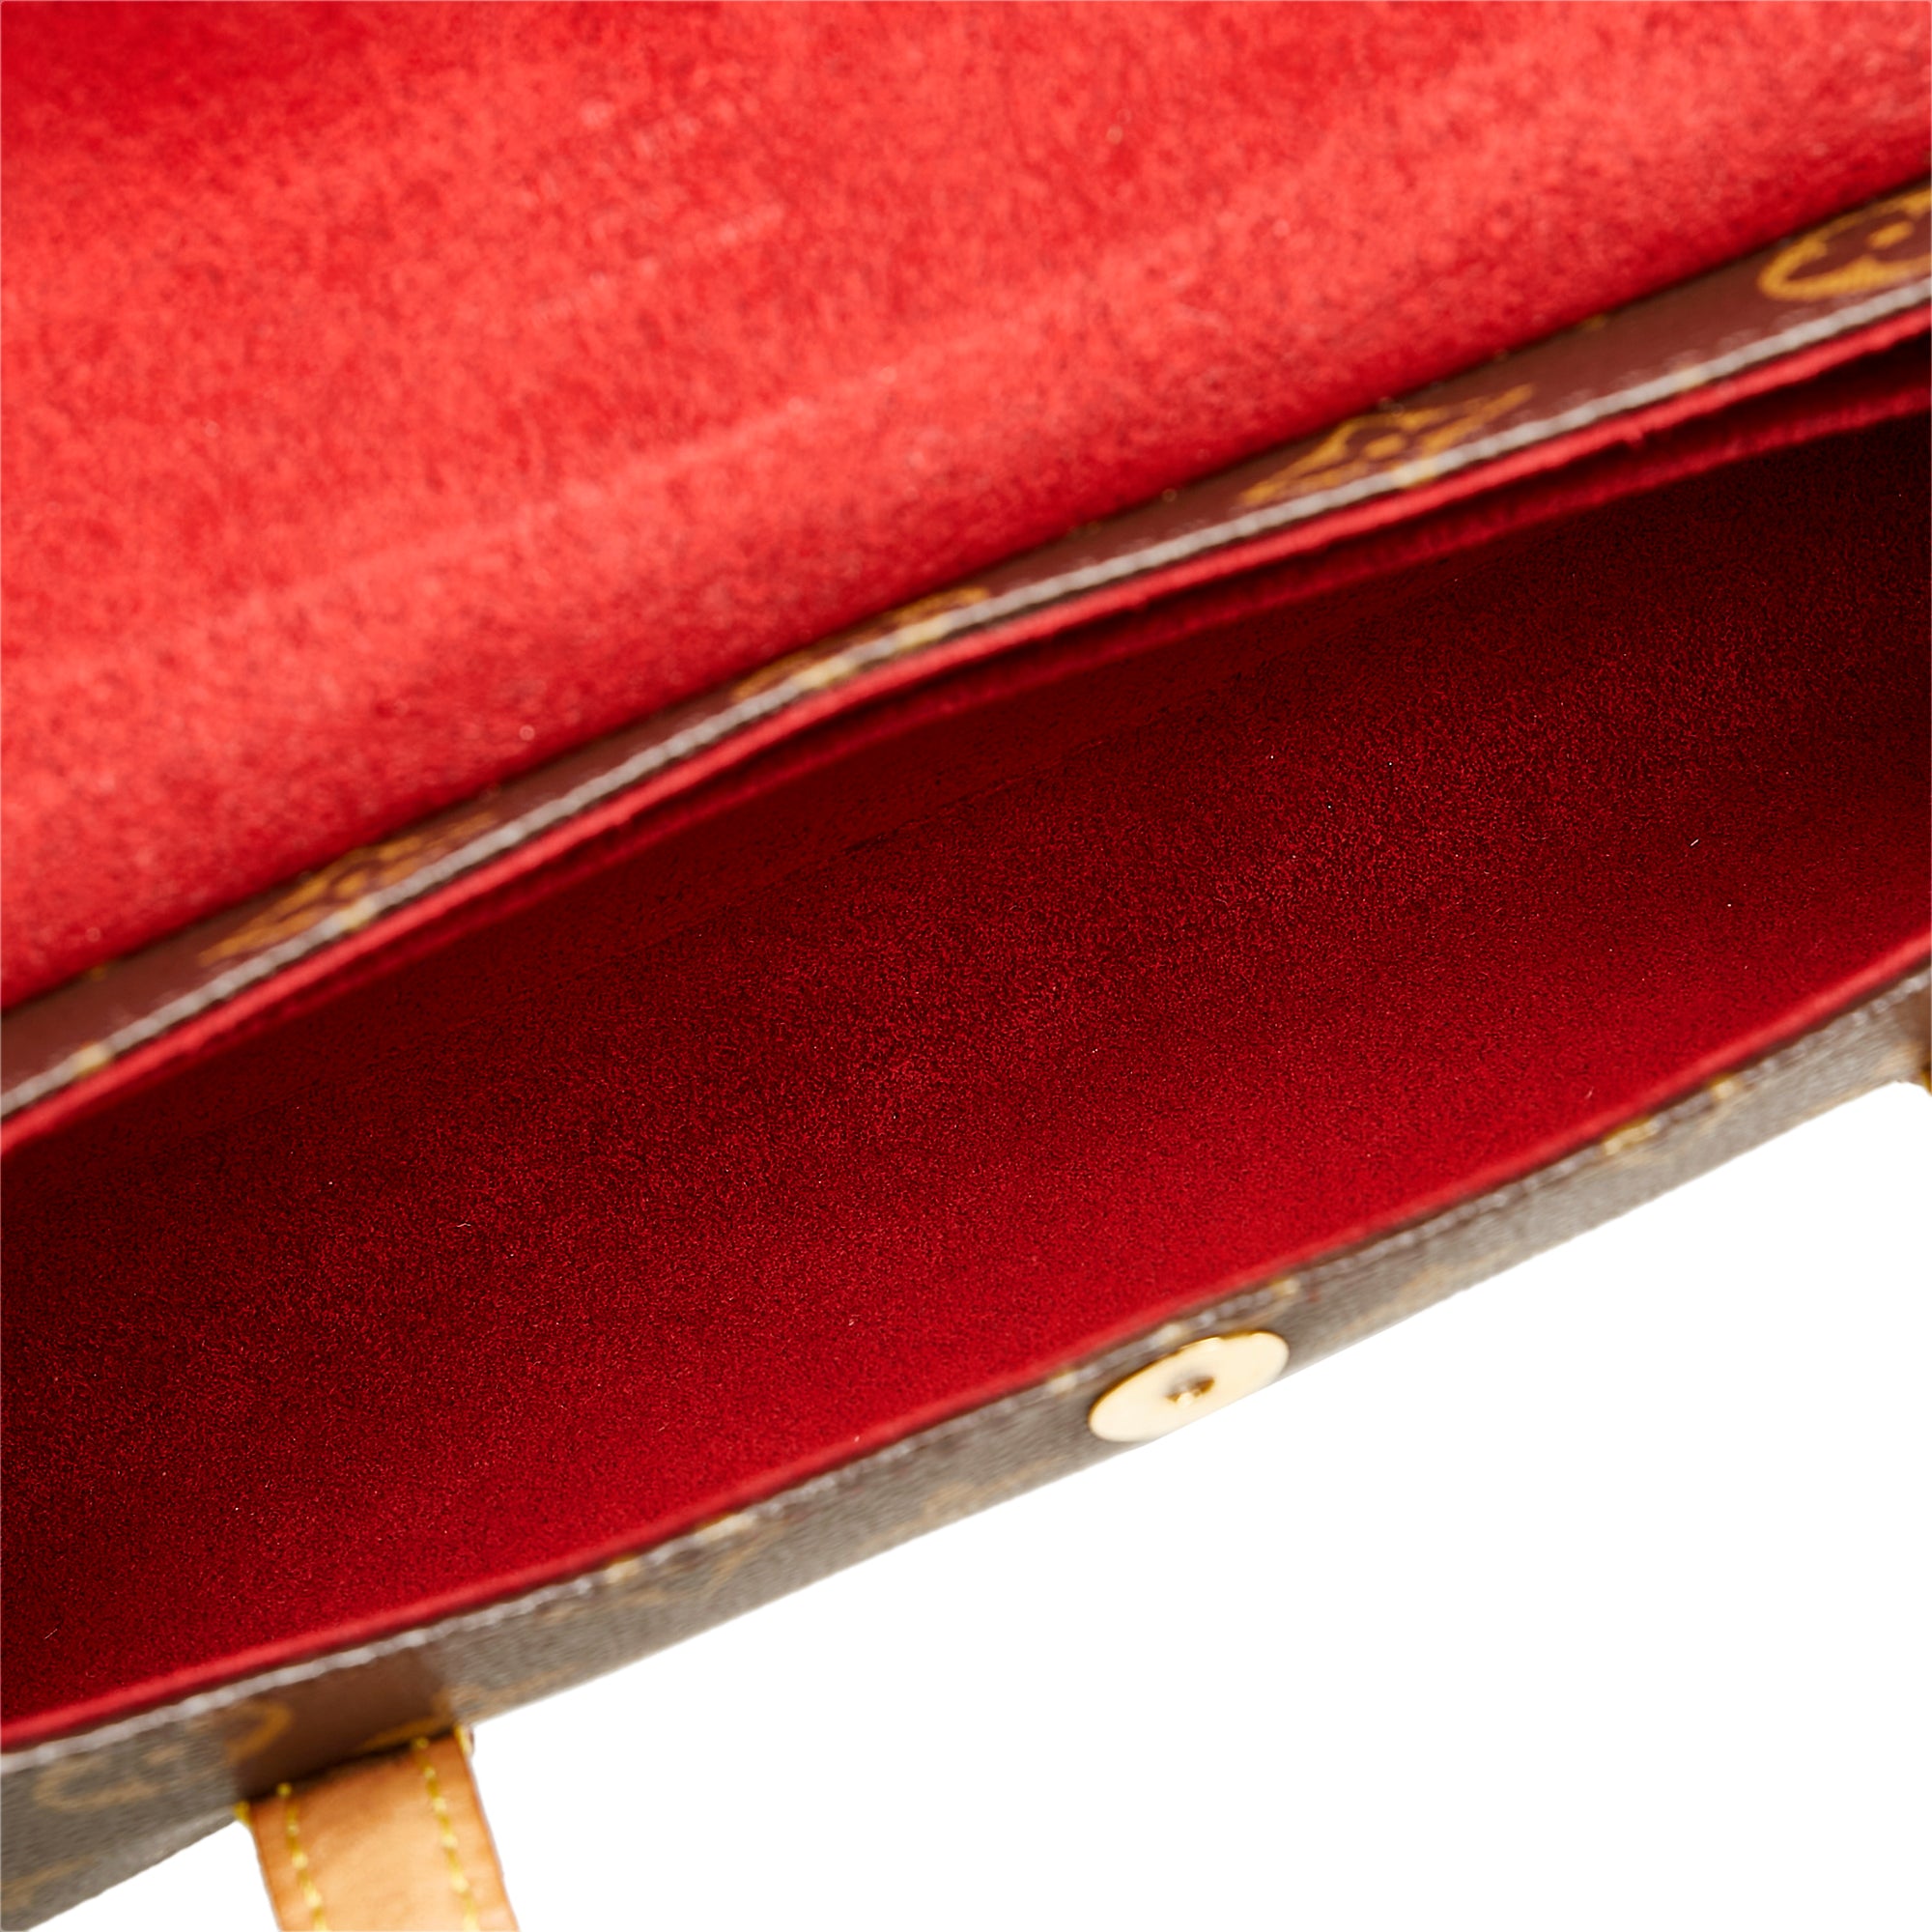 Authenticated Used Louis Vuitton Monogram Recital M51900 Handbag